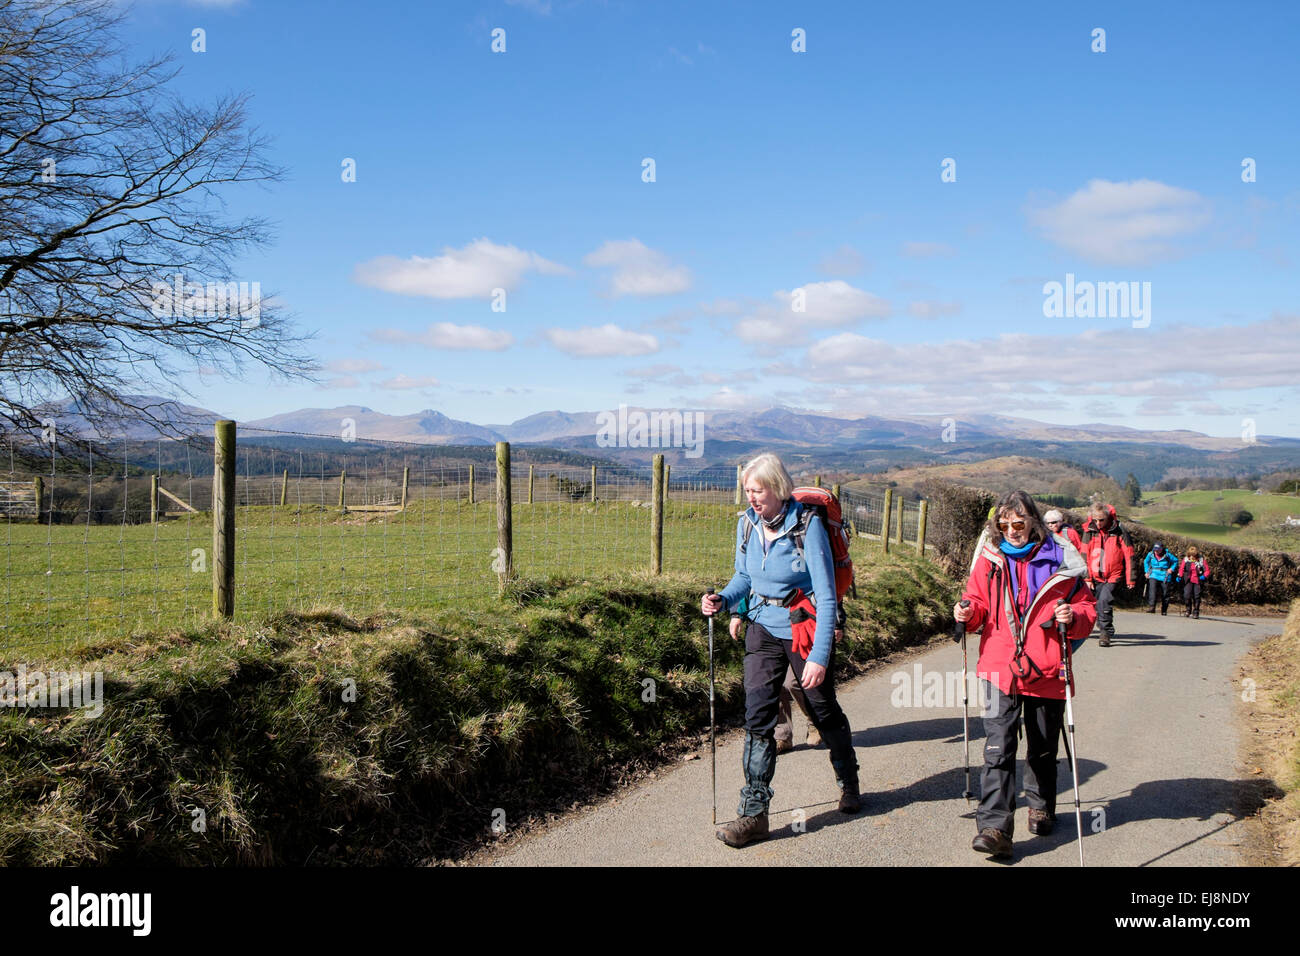 Gruppo di escursionisti a camminare su una strada di campagna con le colline di Snowdonia in distanza. Capel Garmon, Conwy, il Galles del Nord, Regno Unito, Gran Bretagna Foto Stock